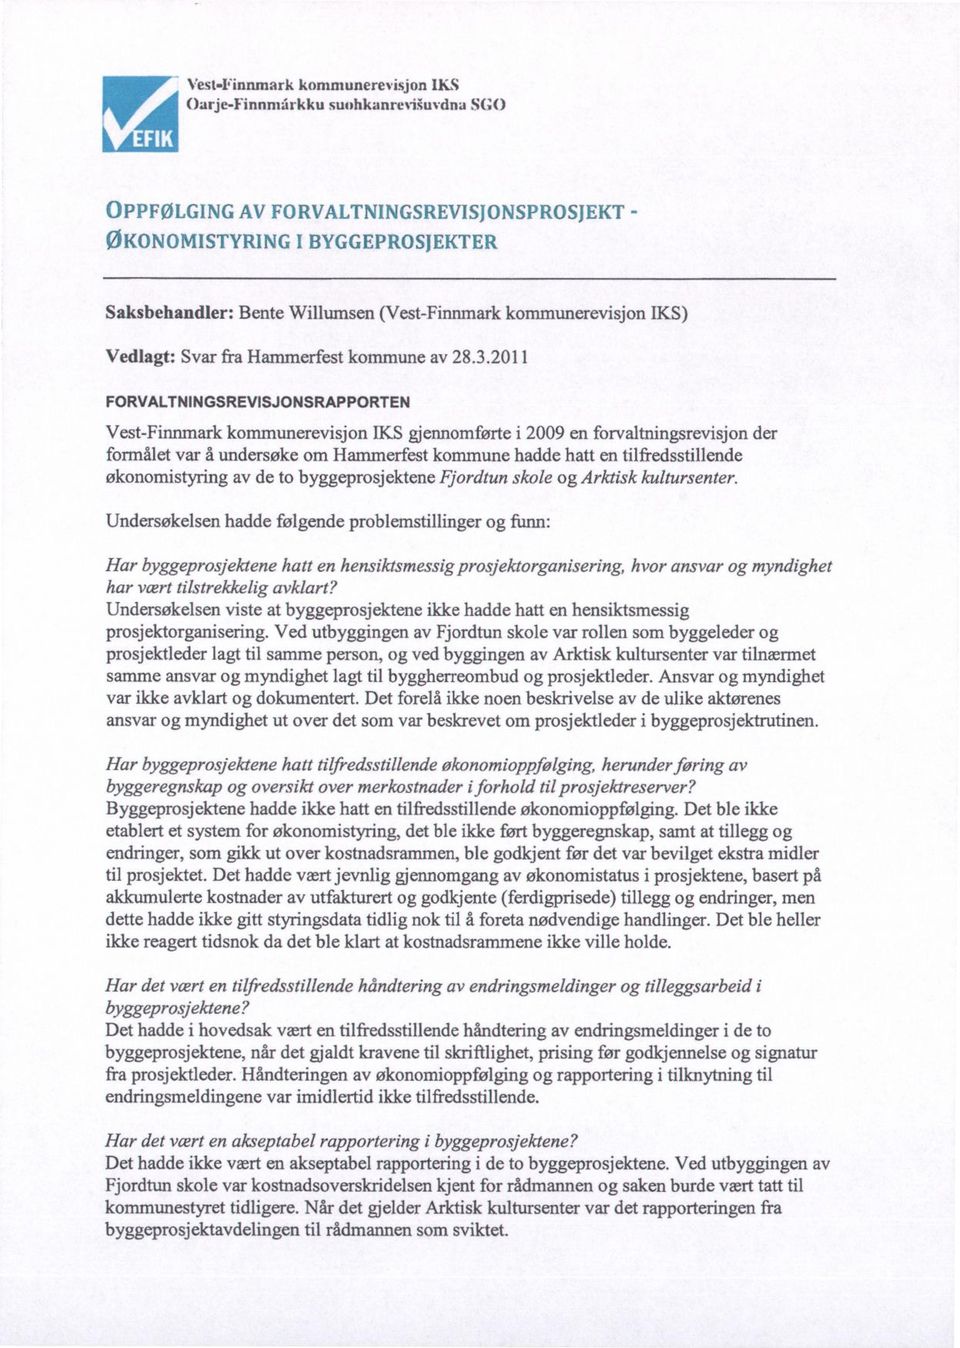 2011 FORVALTNINGSREVISJONSRAPPORTEN Vest-Finnmark kommunerevisjon IKS gjennomførte i 2009 en forvaltningsrevisjon der formålet var å undersøke om Hammerfest kommune hadde hatt en tilfredsstillende